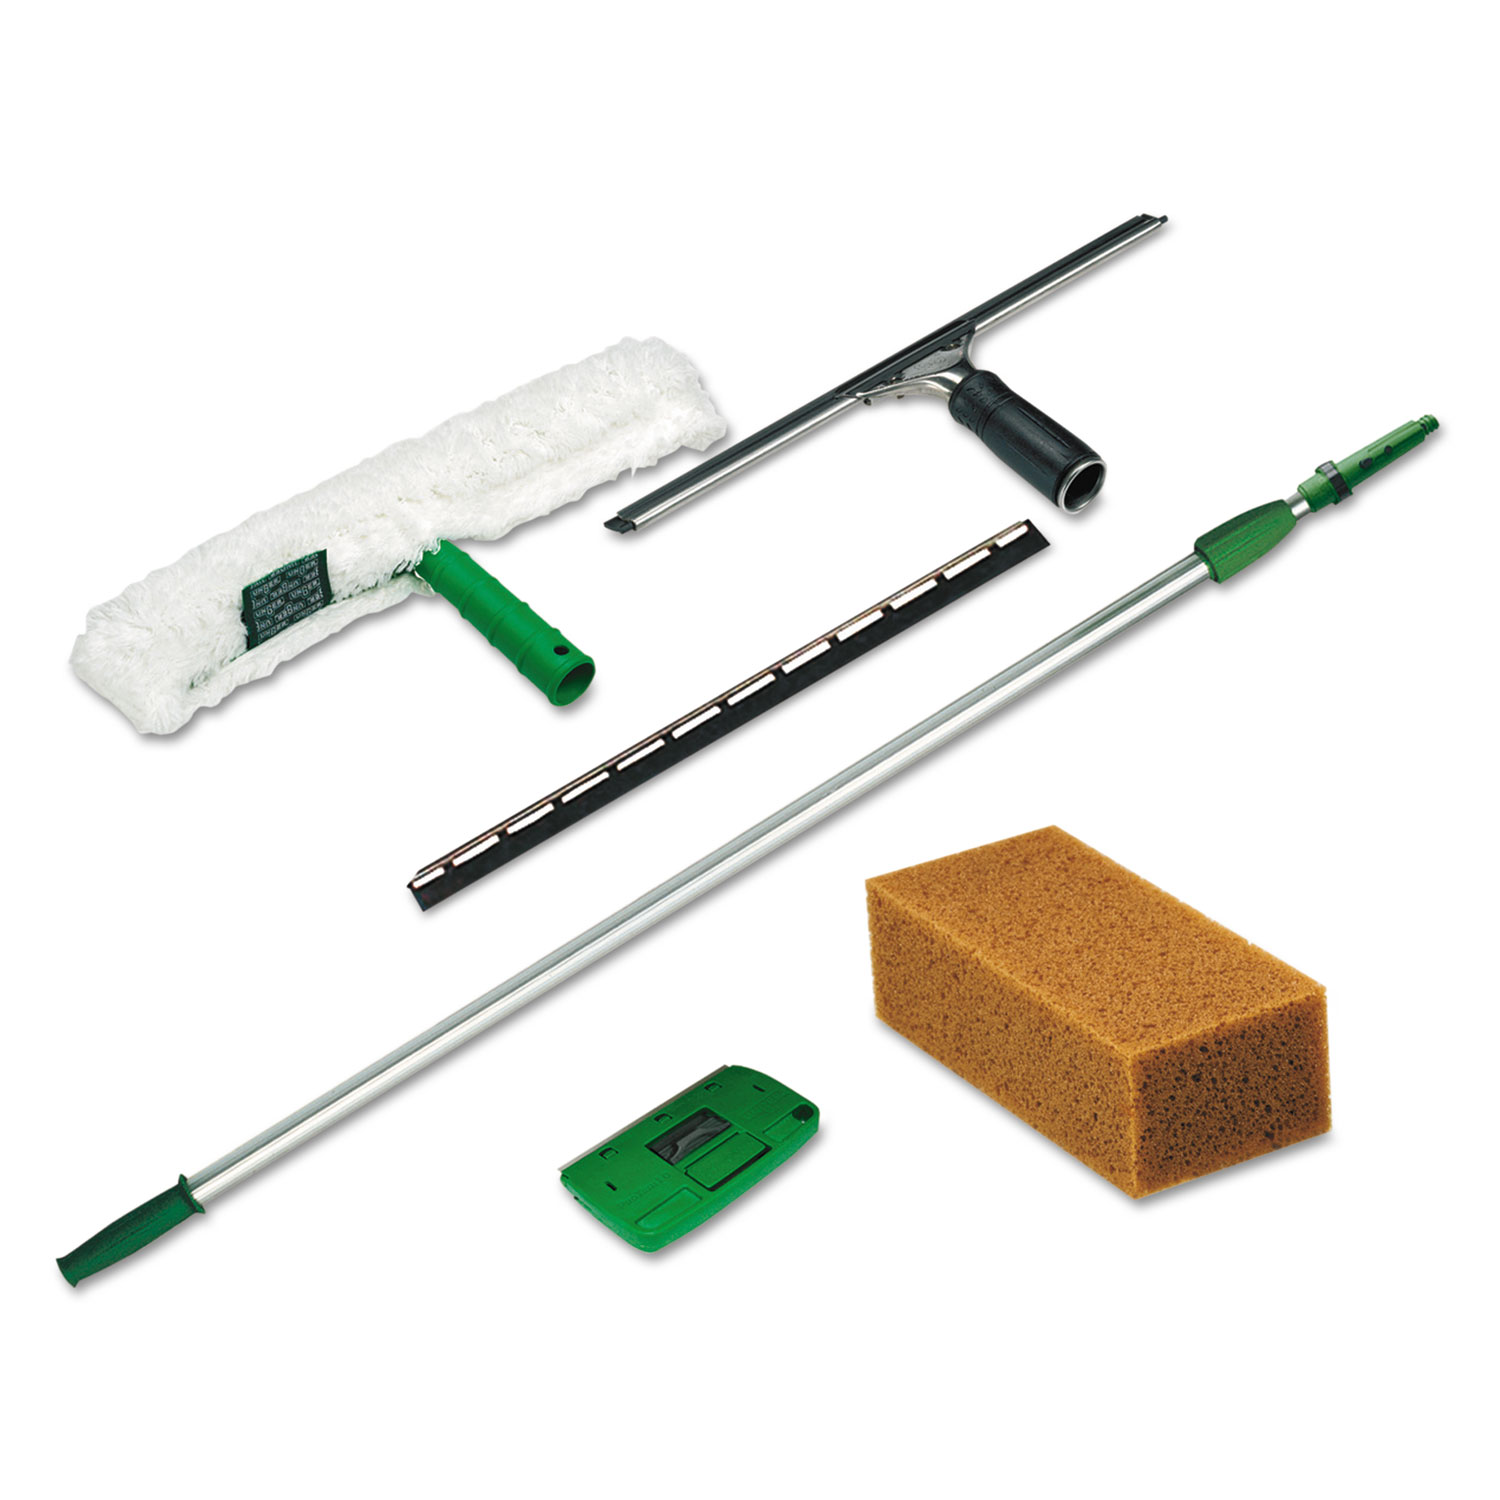  Unger PWK00 Pro Window Cleaning Kit w/8ft Pole, Scrubber, Squeegee, Scraper, Sponge (UNGPWK00) 